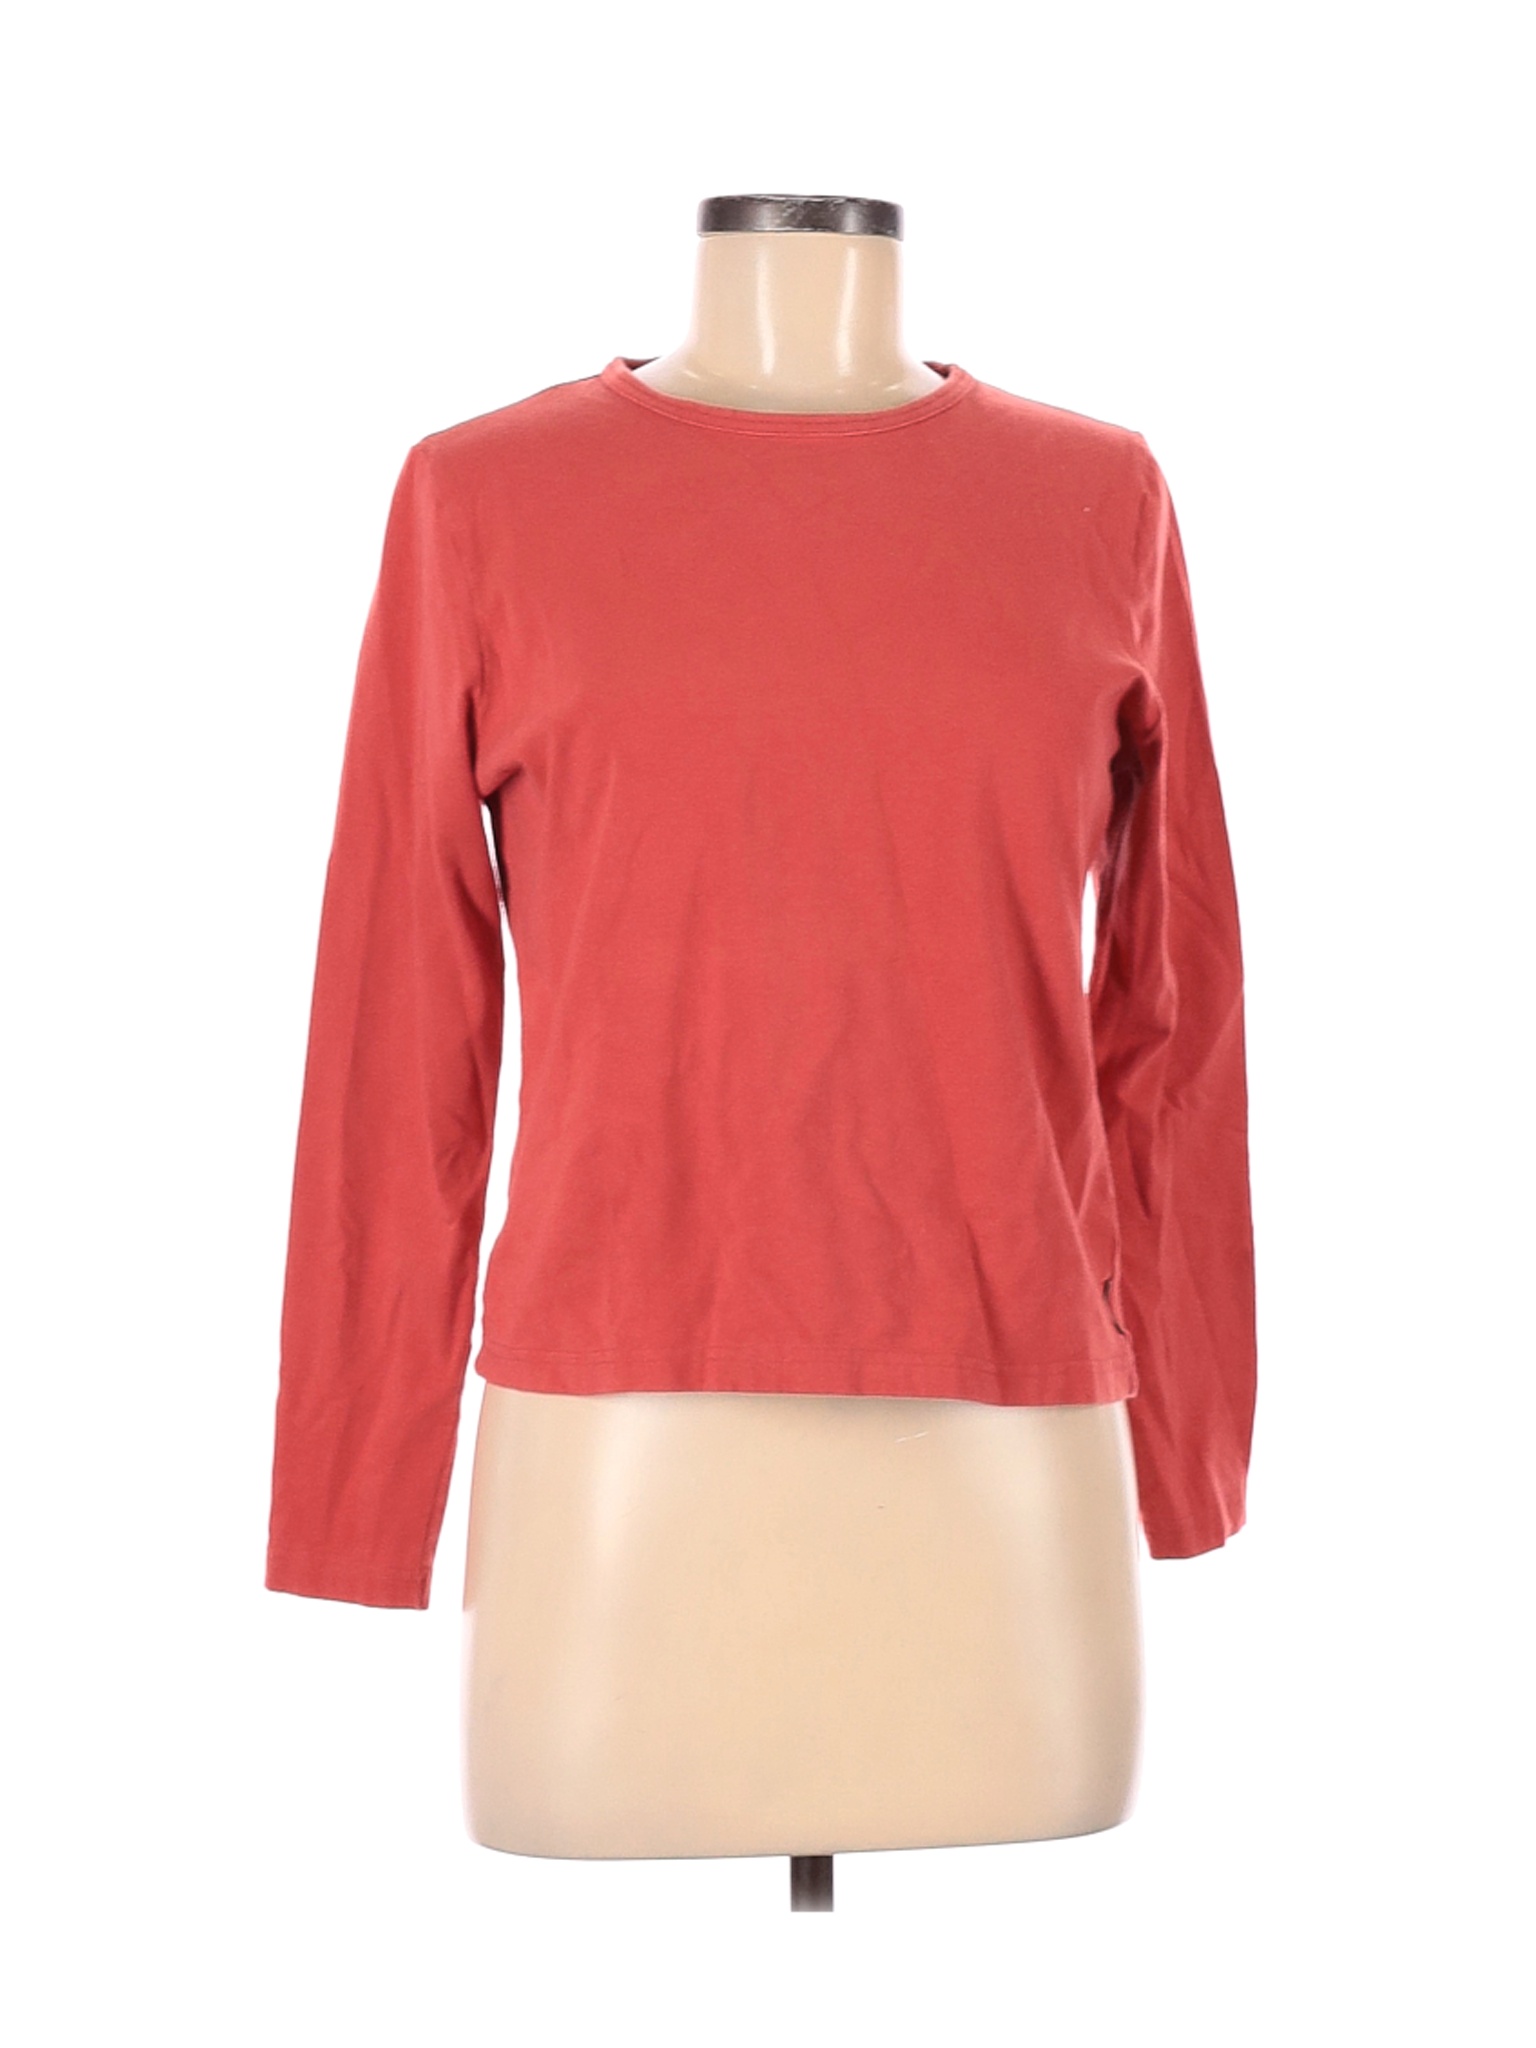 Woolrich Women Pink Long Sleeve T-Shirt M | eBay